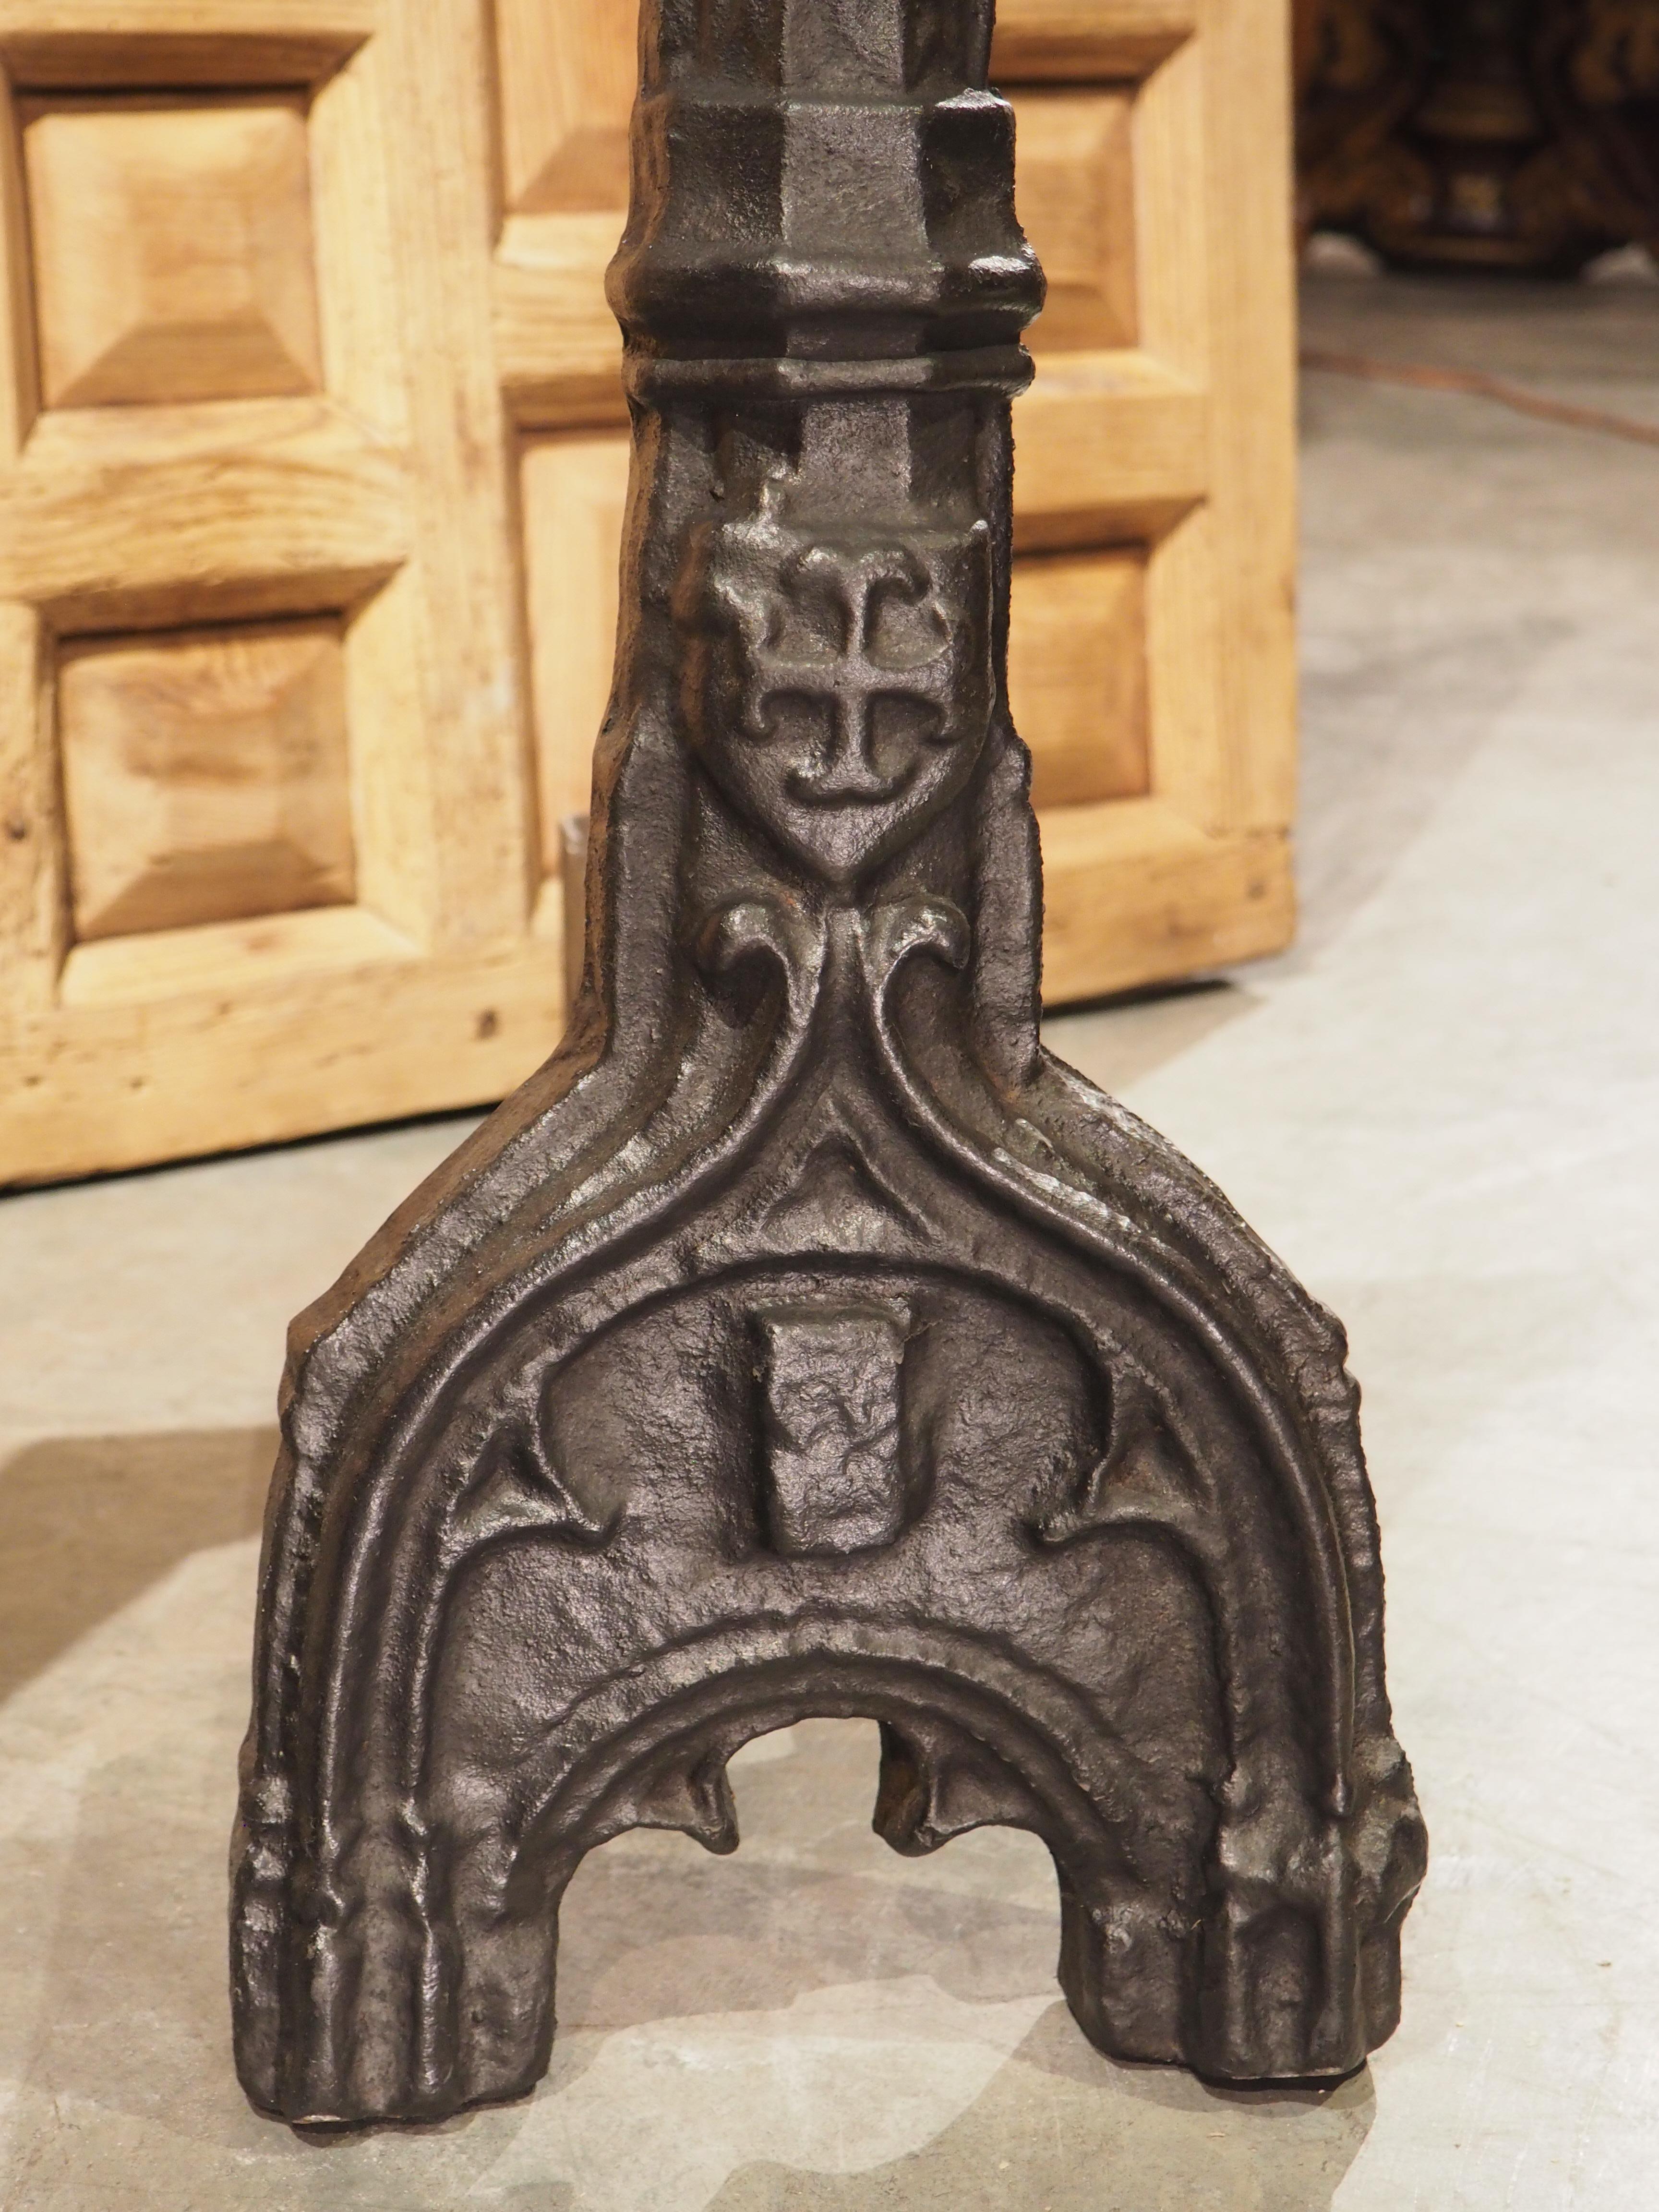 Ces importants chenets de cheminée gothiques en fonte ont près de 500 ans. Parfois appelés chiens de feu ou andirons, les chenets sont des accessoires de cheminée conçus pour surélever le bois de chauffage. Cette paire, qui a été produite en France